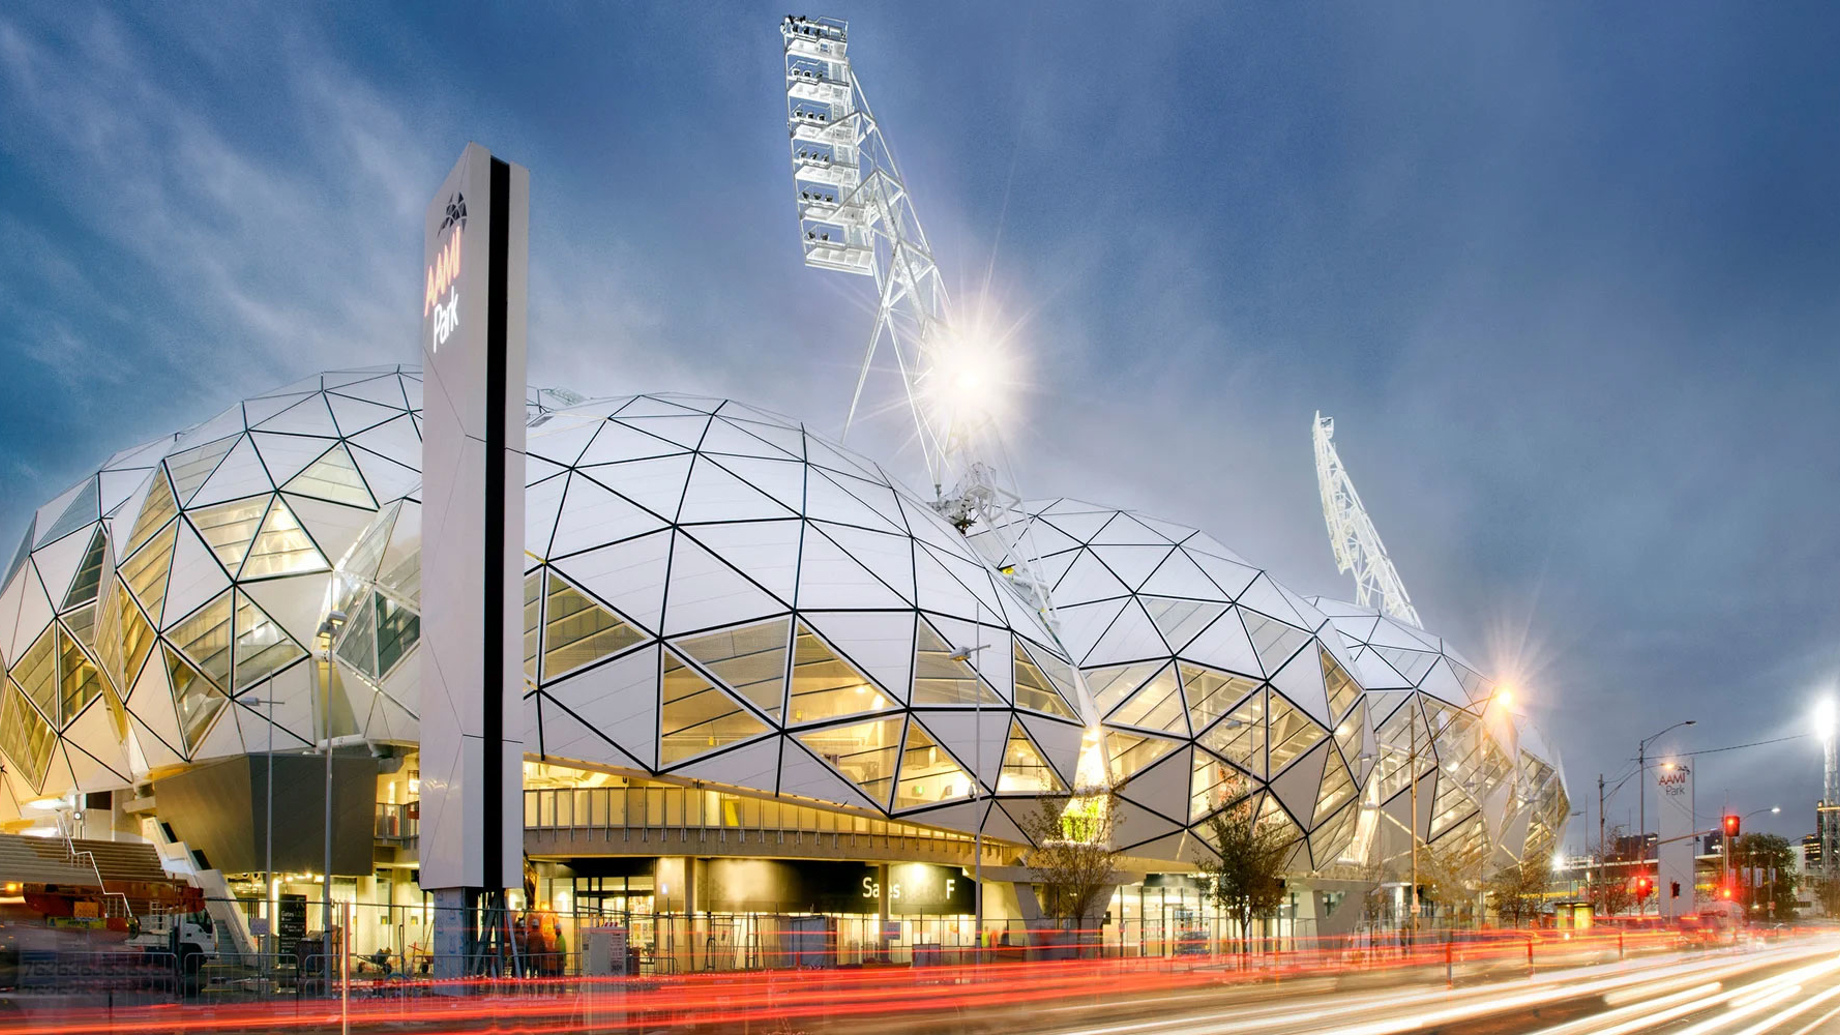 AAMI Park Stadium, Melbourne